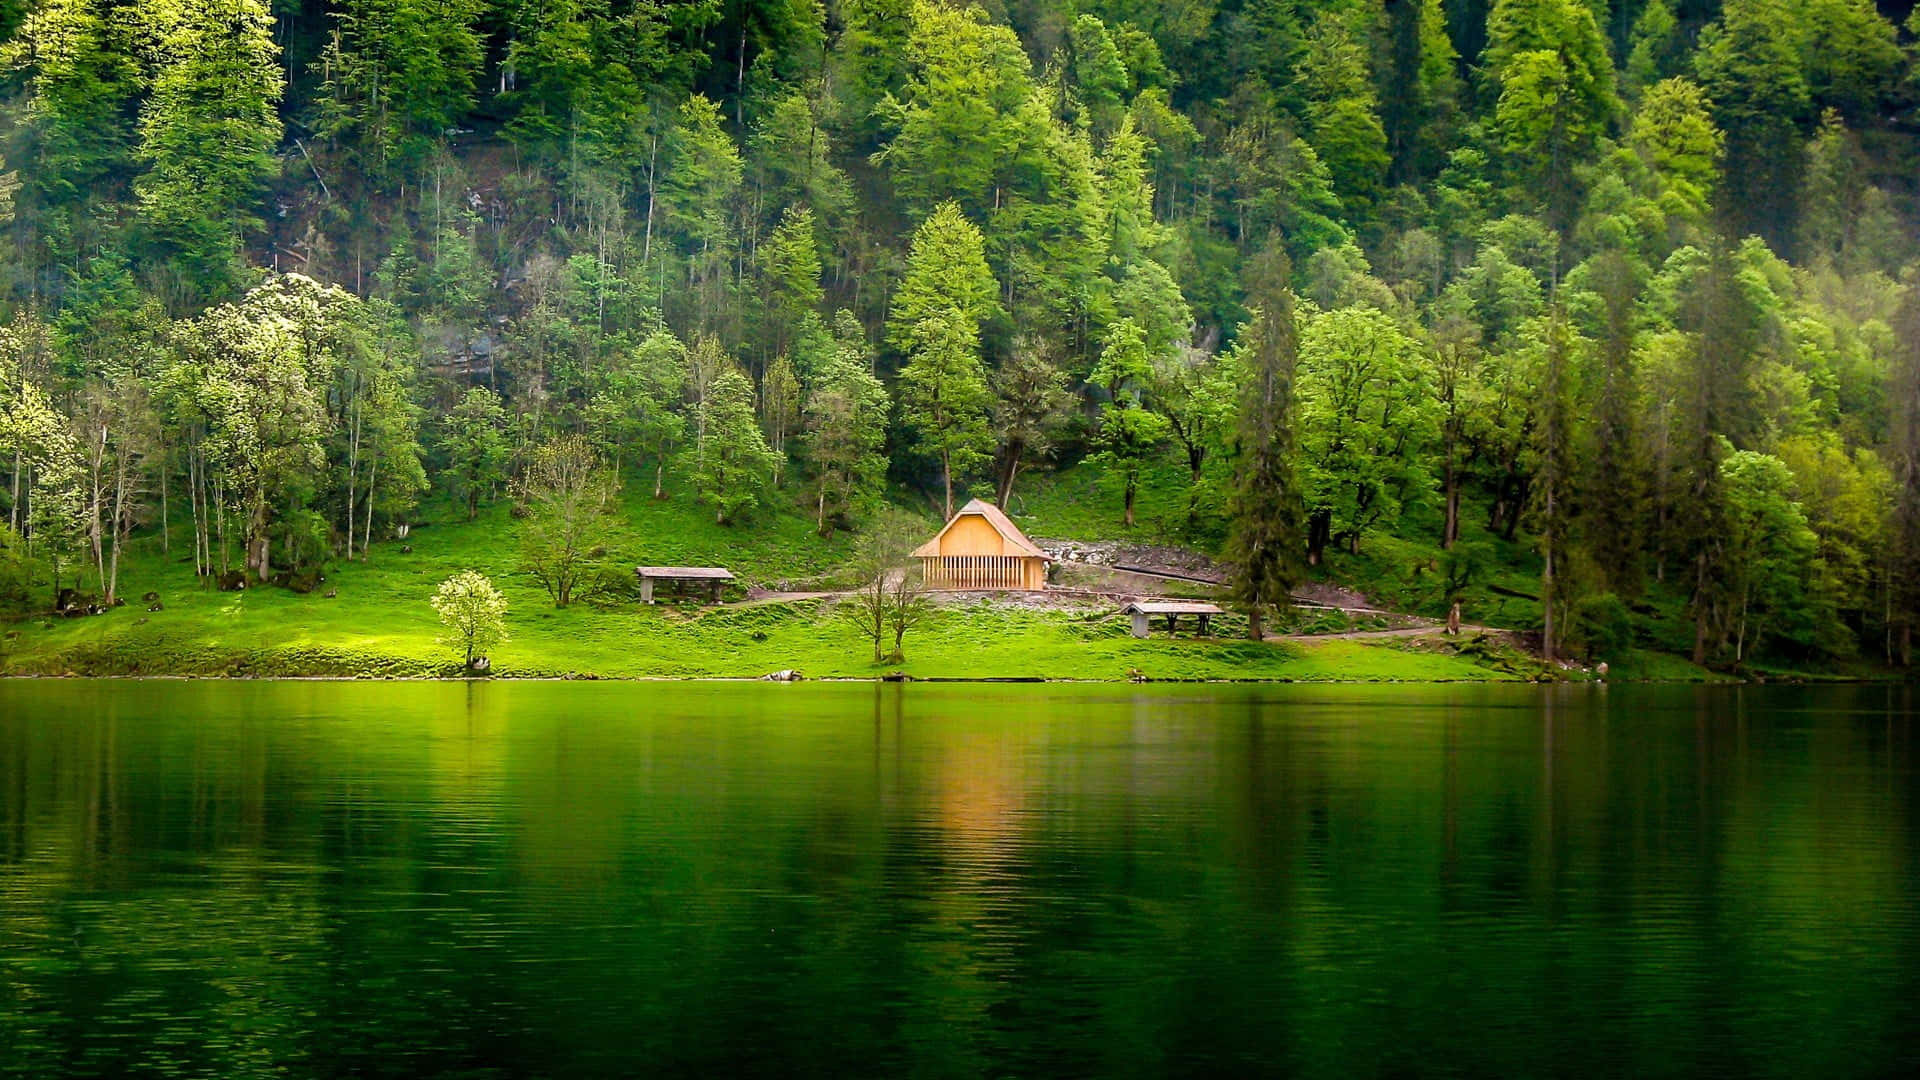 Einkleines Haus An Einem See, Umgeben Von Grünen Bäumen.